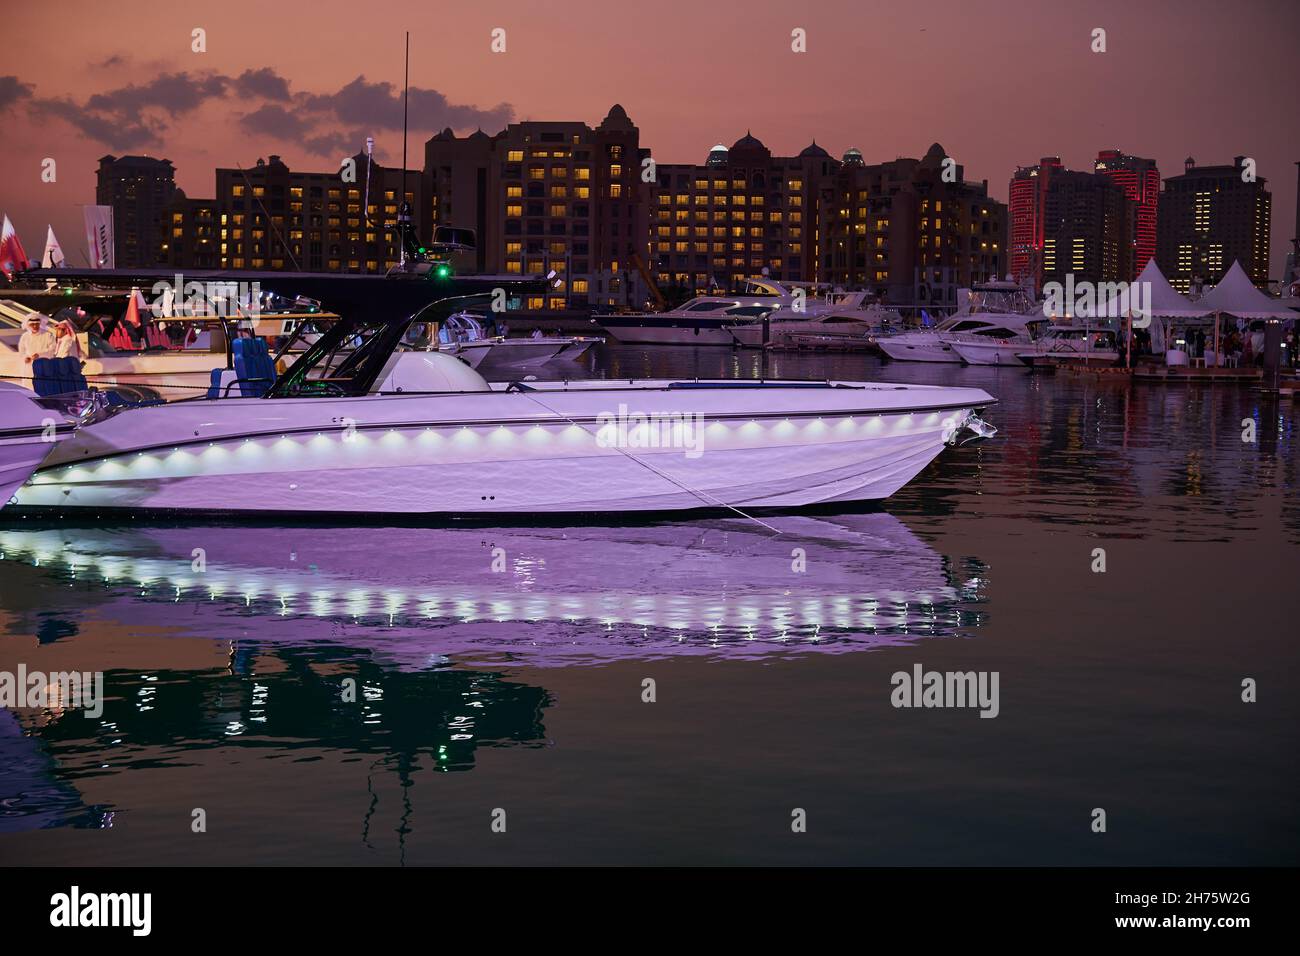 La perla Marina di Porto Arabia vista notturna con barche in primo piano, edifici e nuvole nel cielo in background Foto Stock